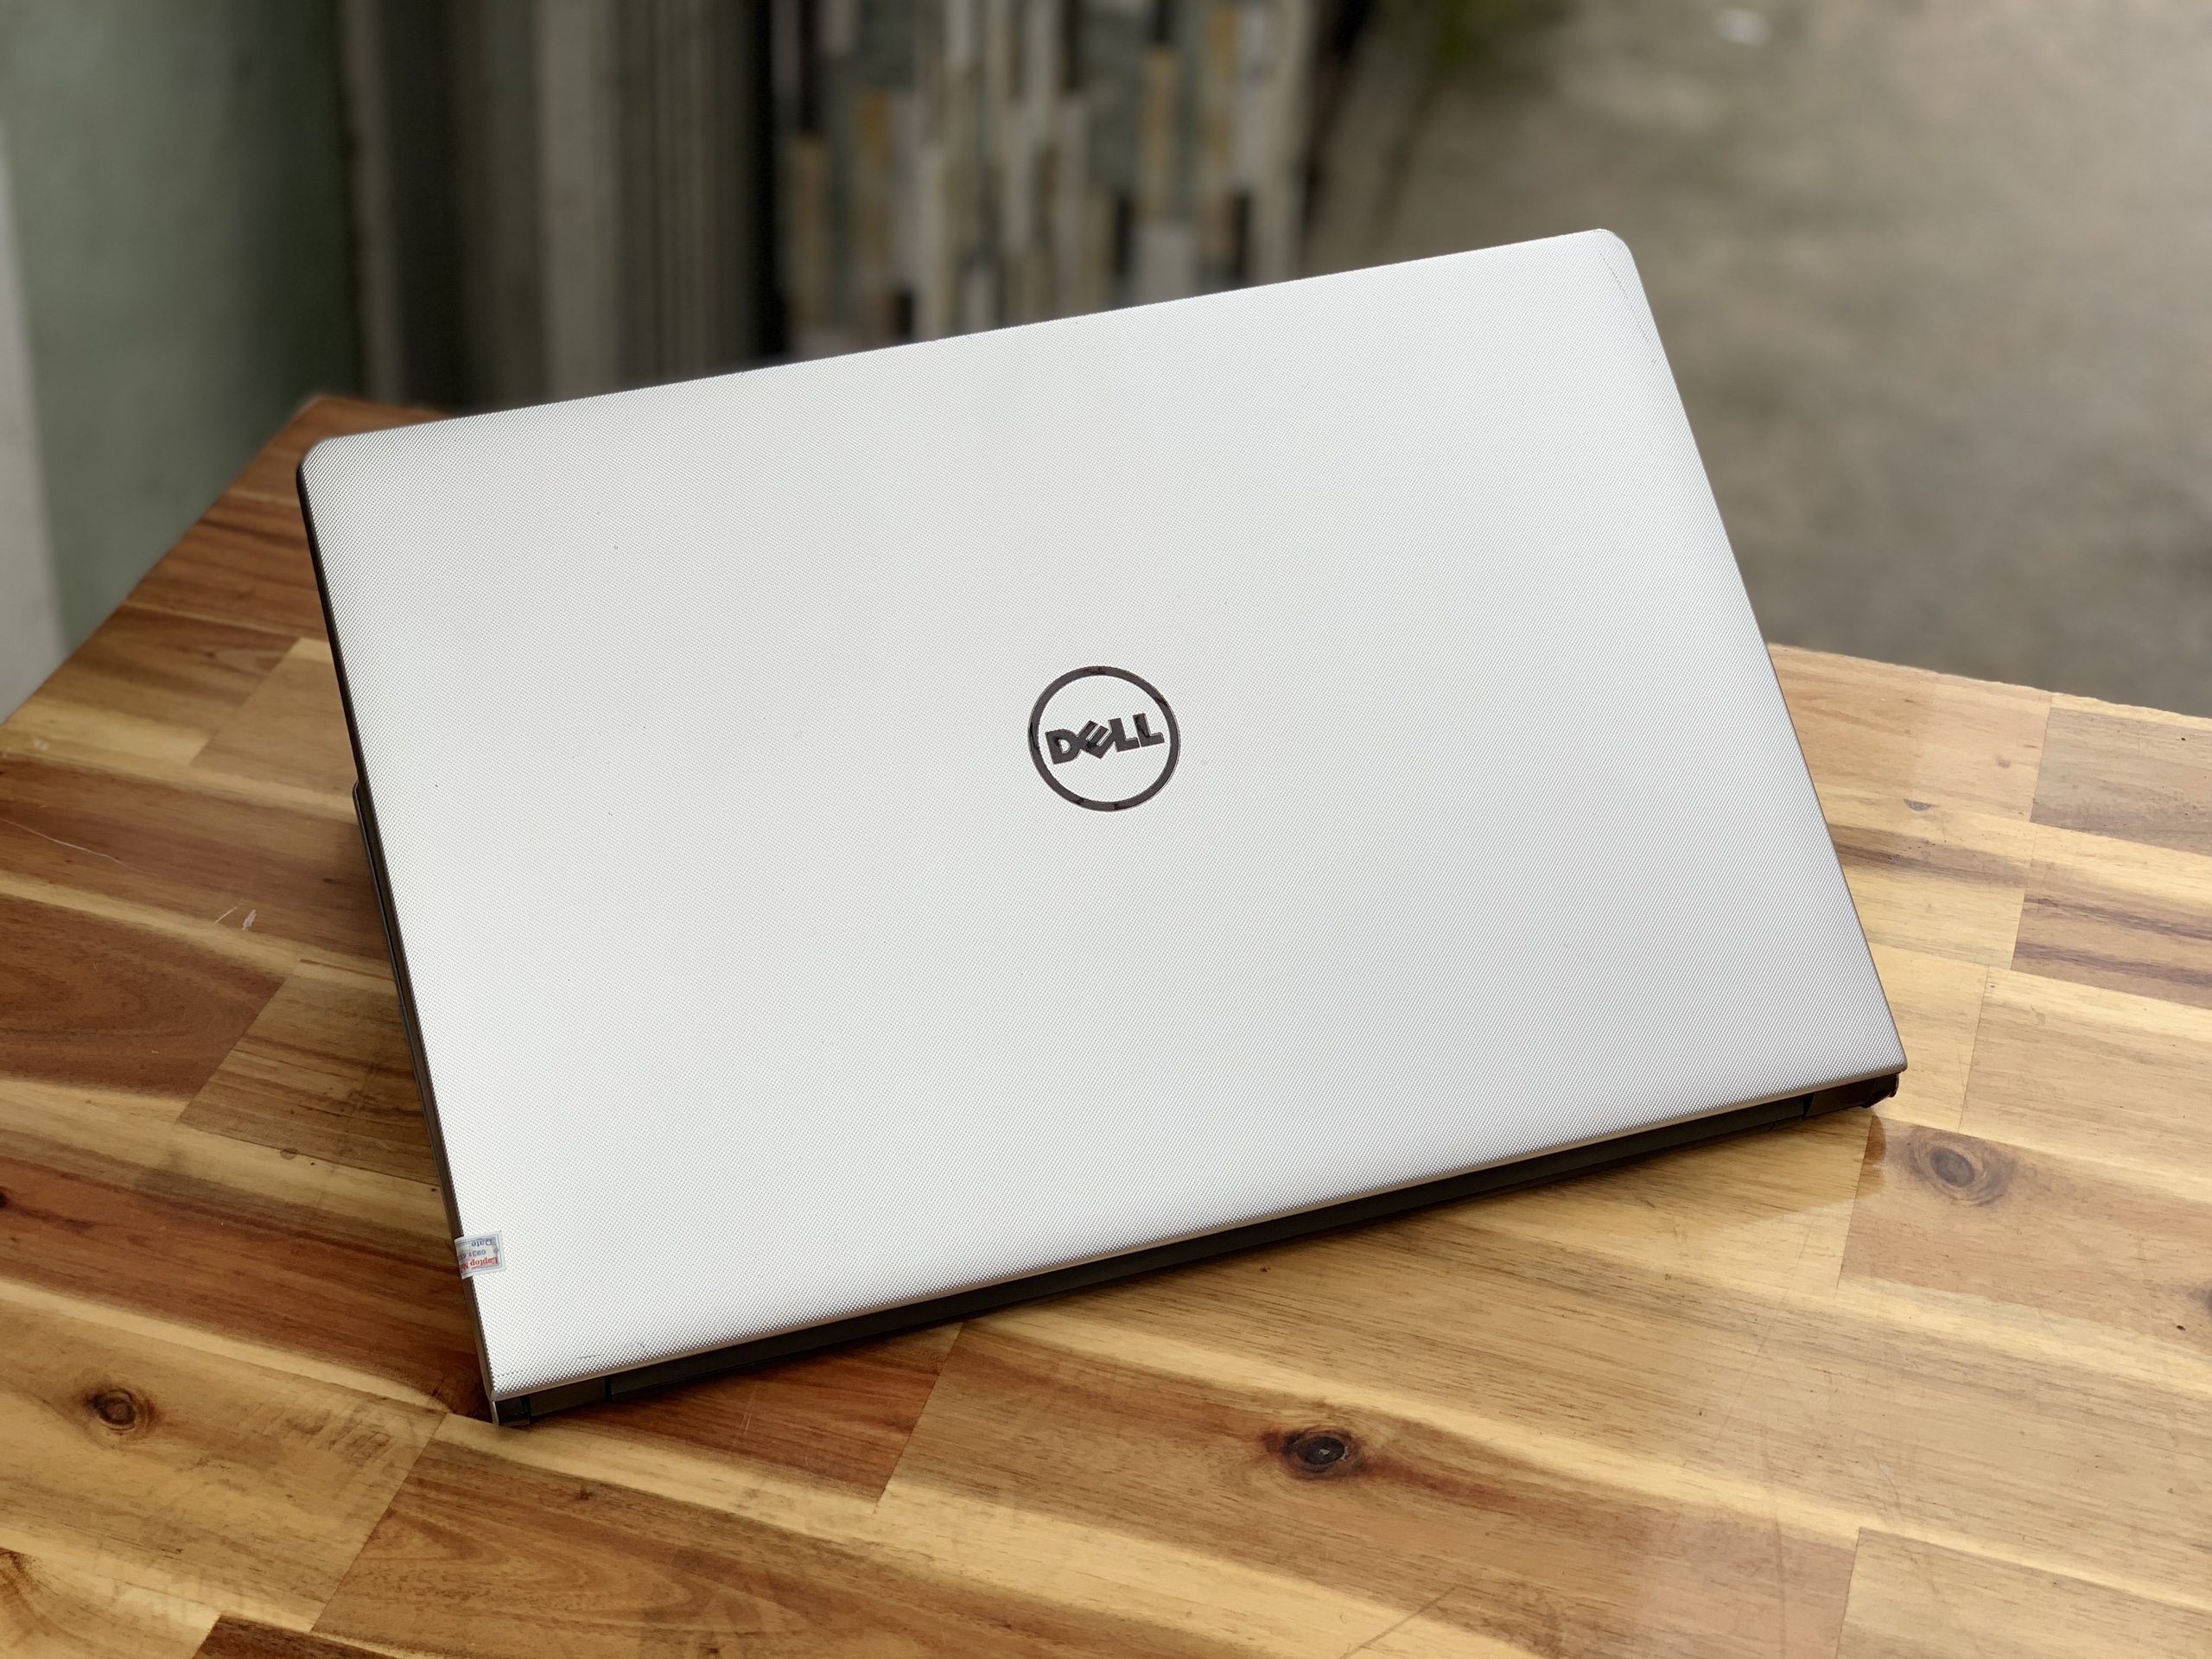 Laptop Dell Ultrabook 5559 , i5 6200U 8G SSD128G màu bạc đẹp zin 100% Giá rẻ3